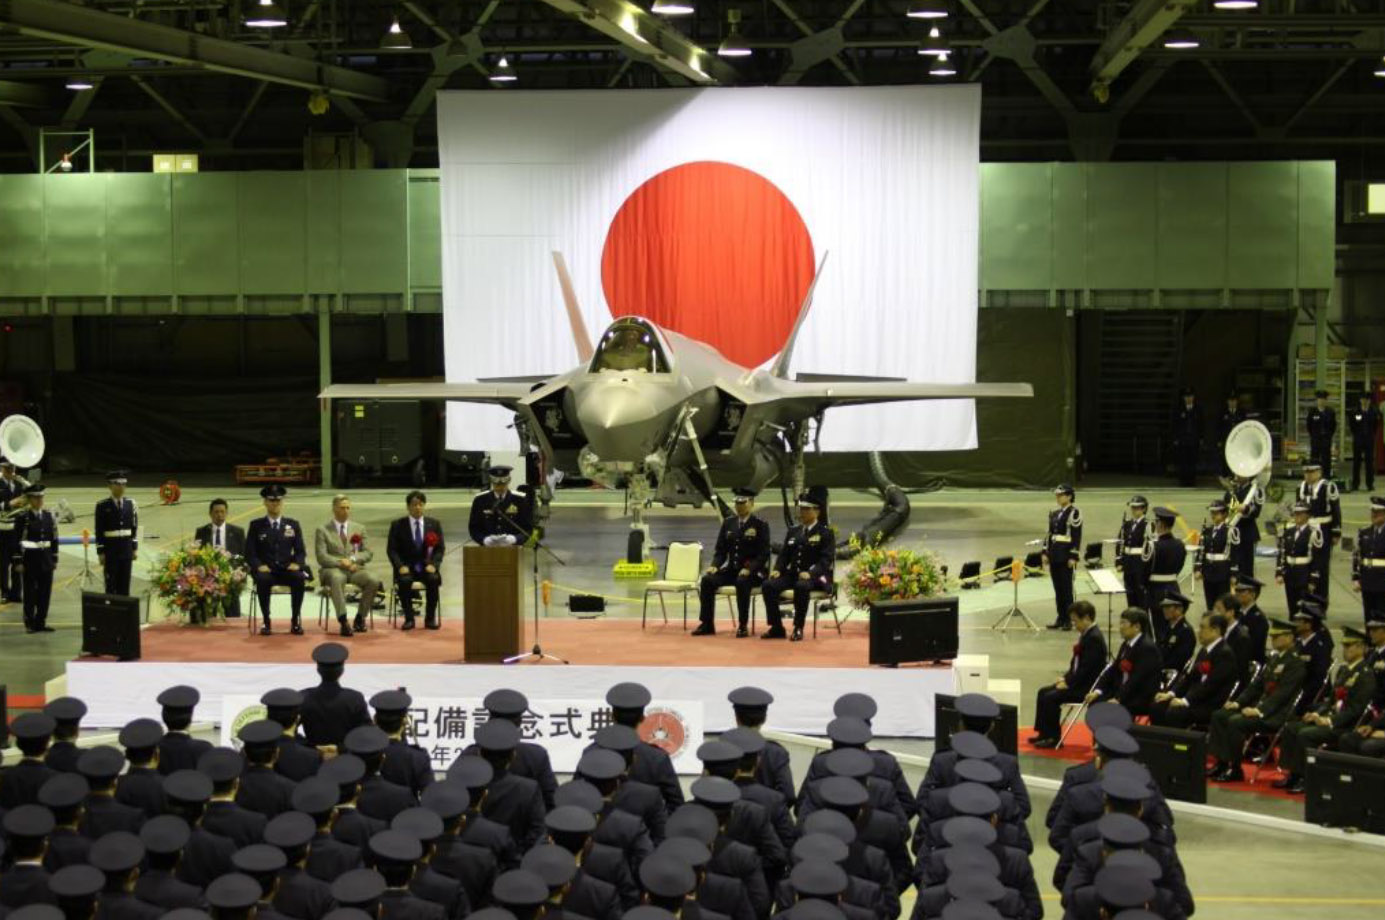 Le immagini della cerimonia di arrivo dell’F-35 a Misawa